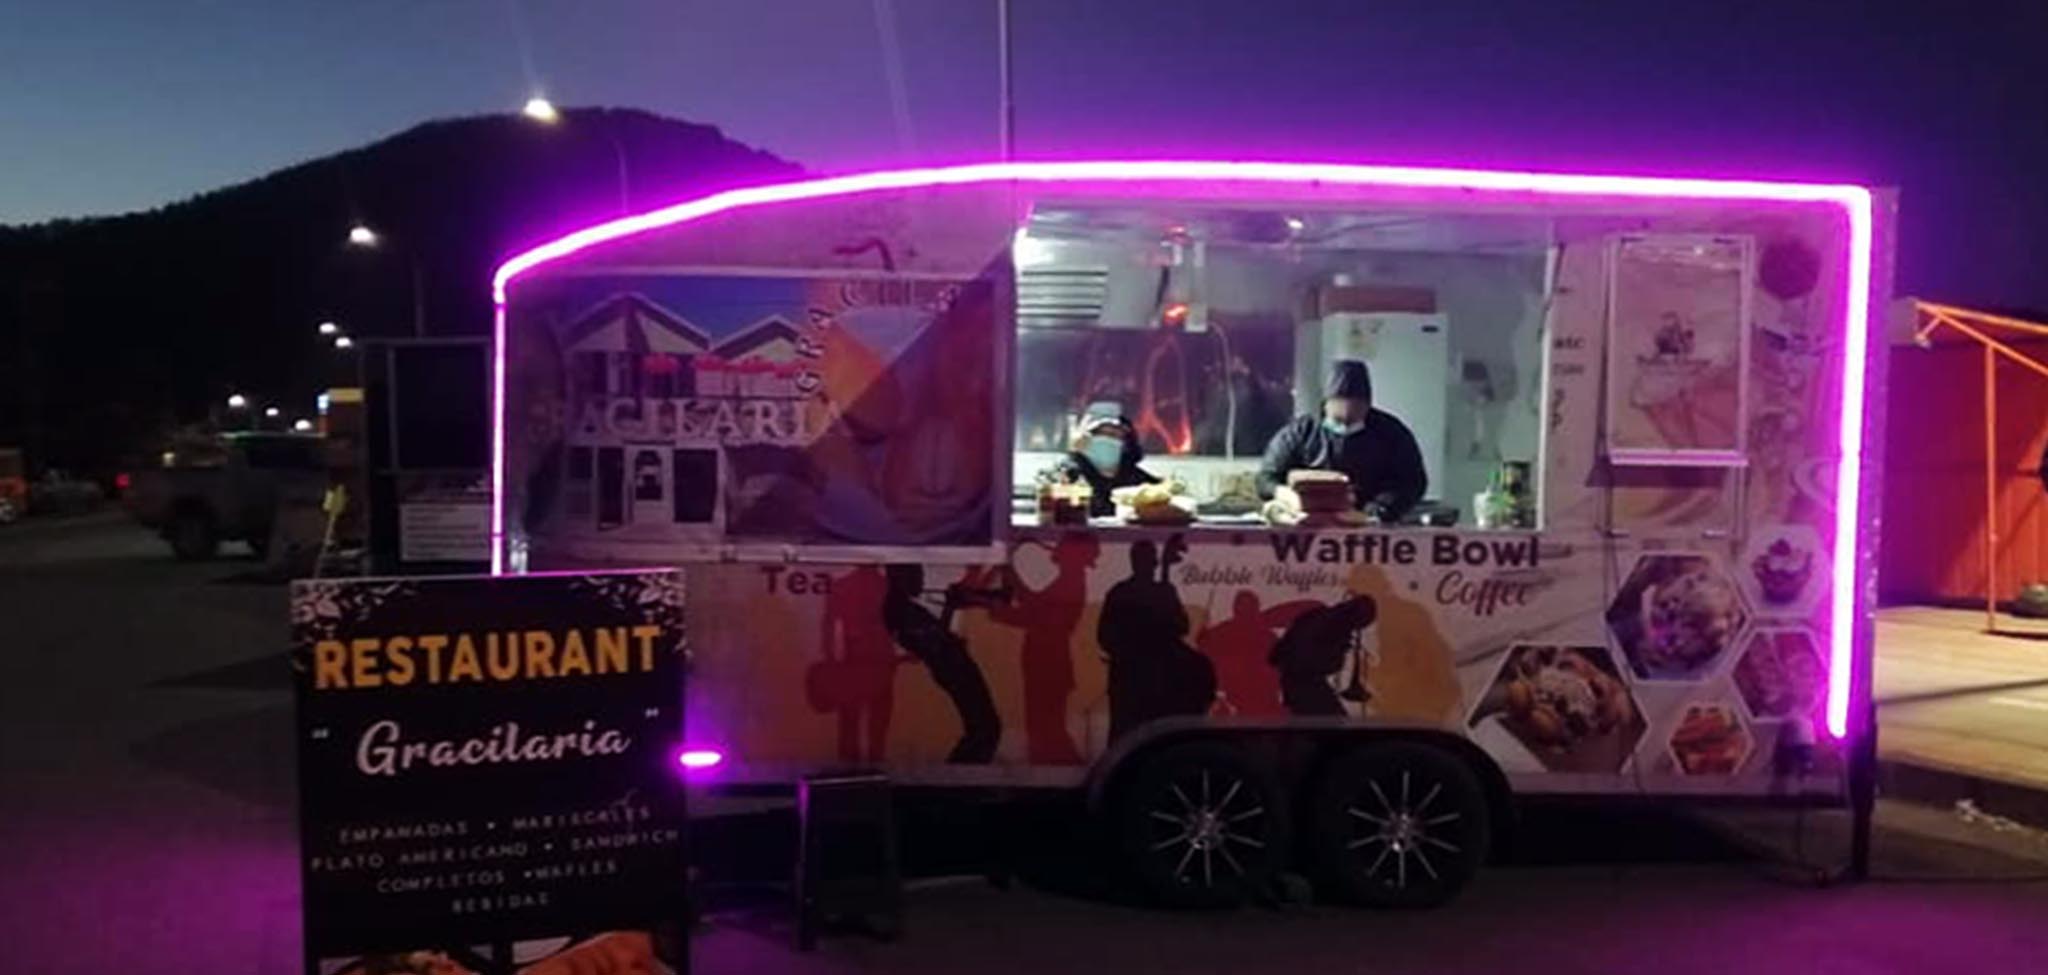 Food truck de restaurante gracilaria a la entrada de la caleta Lenga en Hualpén, Concepción, Chile